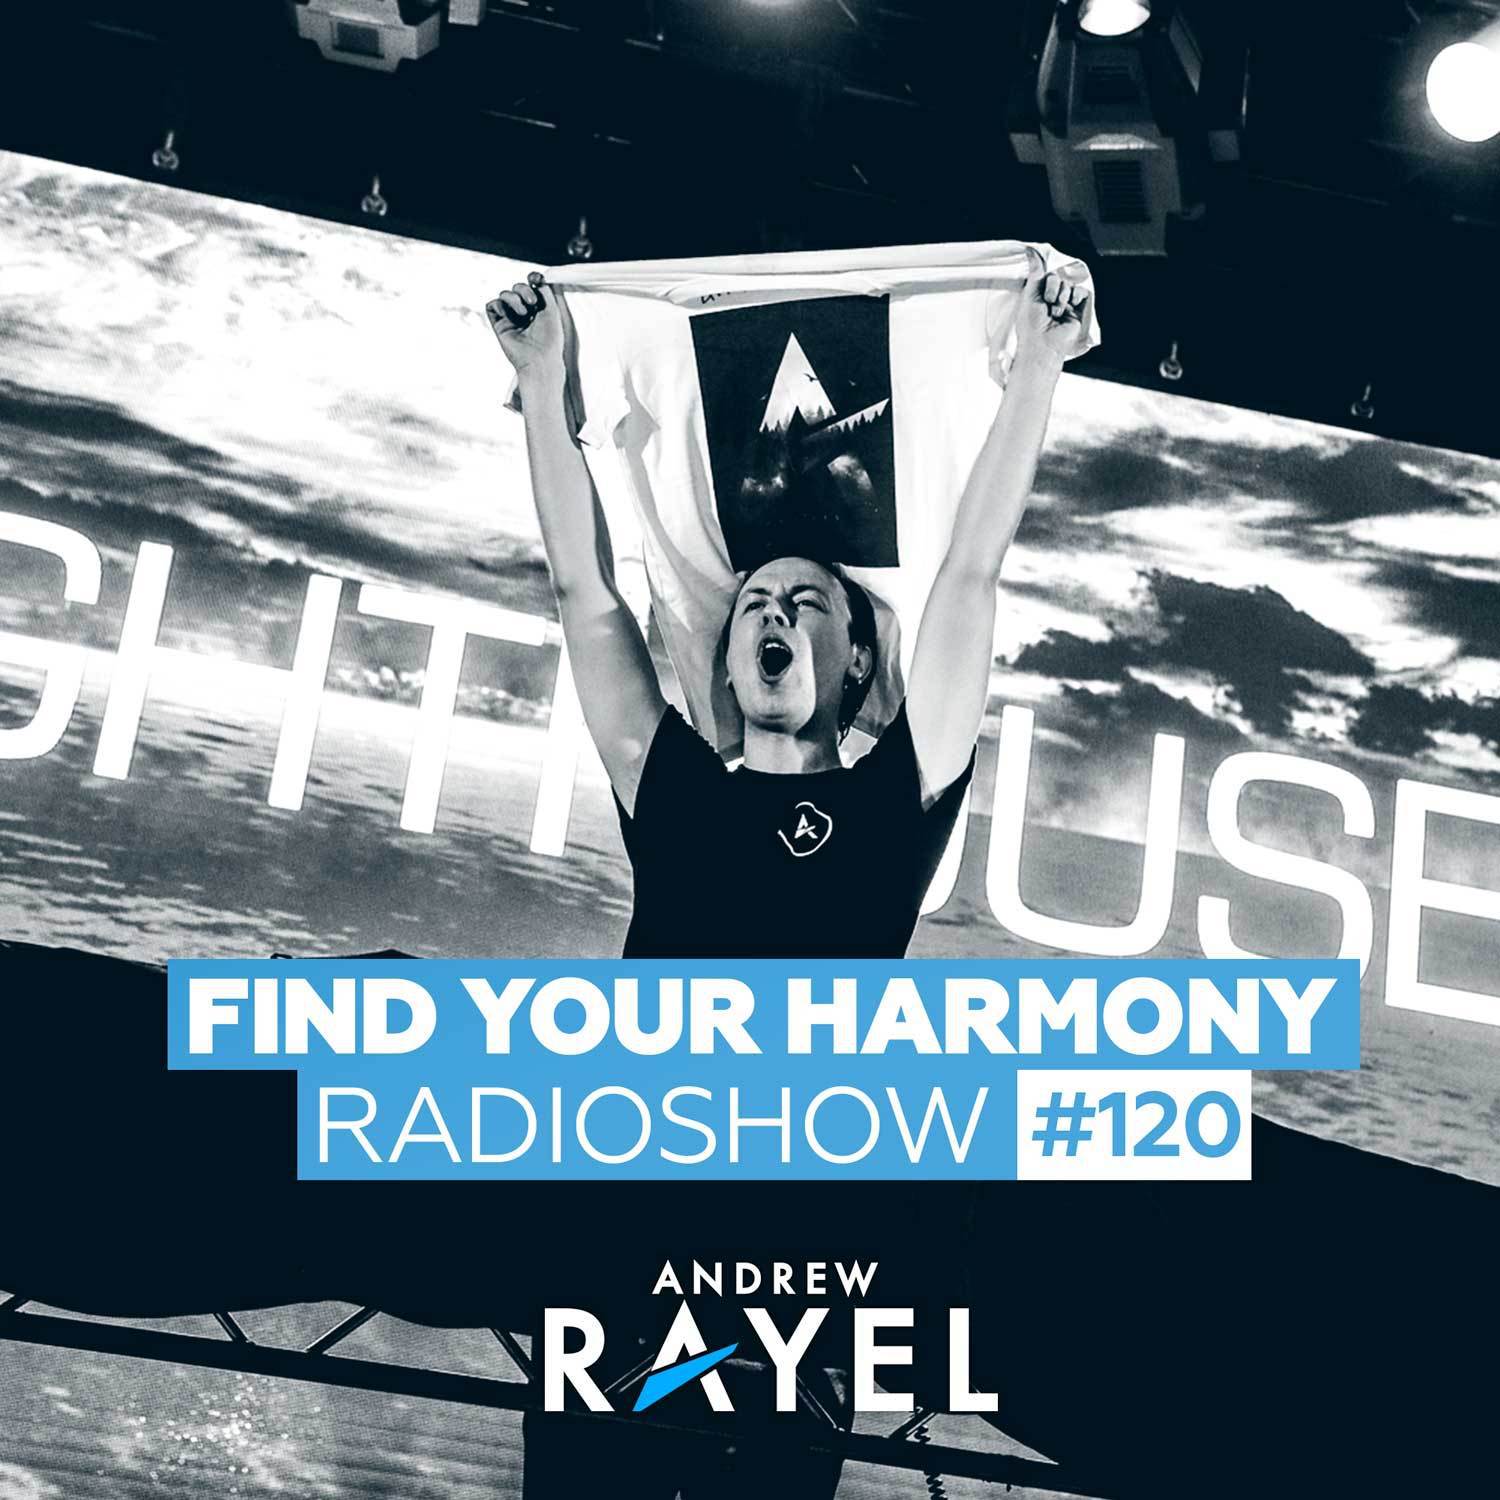 Find Your Harmony Radioshow #120专辑